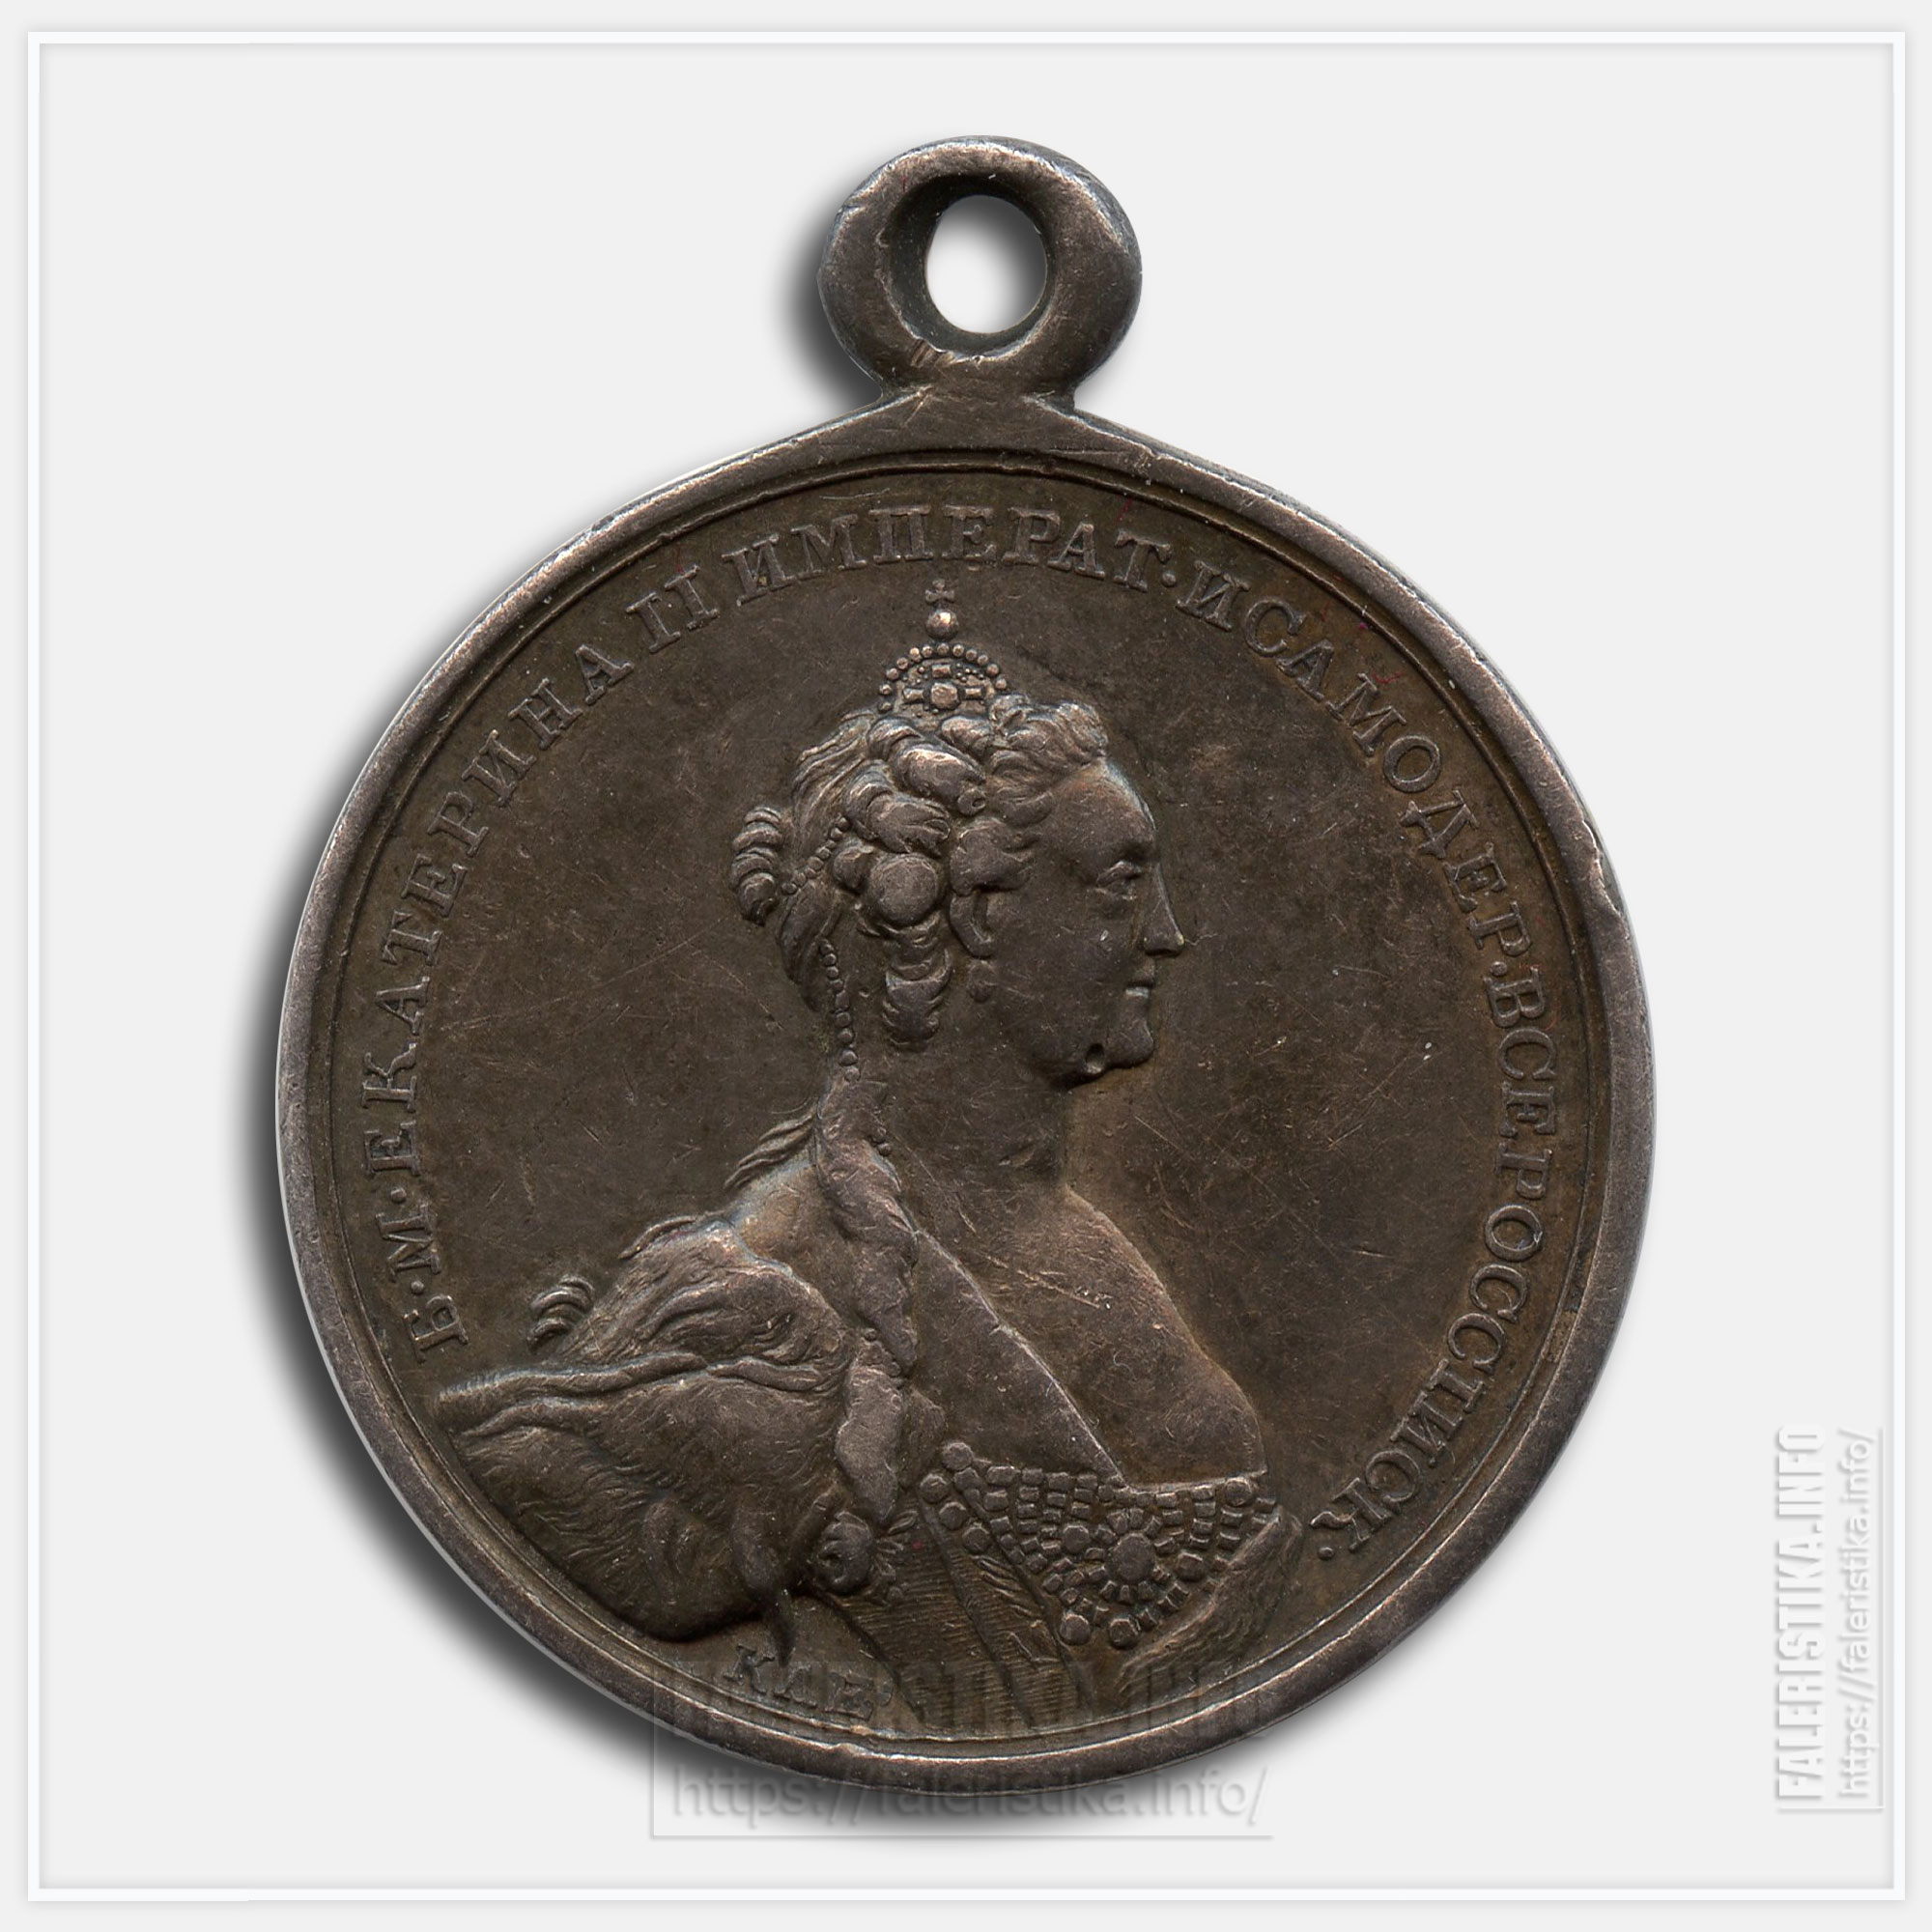 Медаль "За прививание оспы" 1826